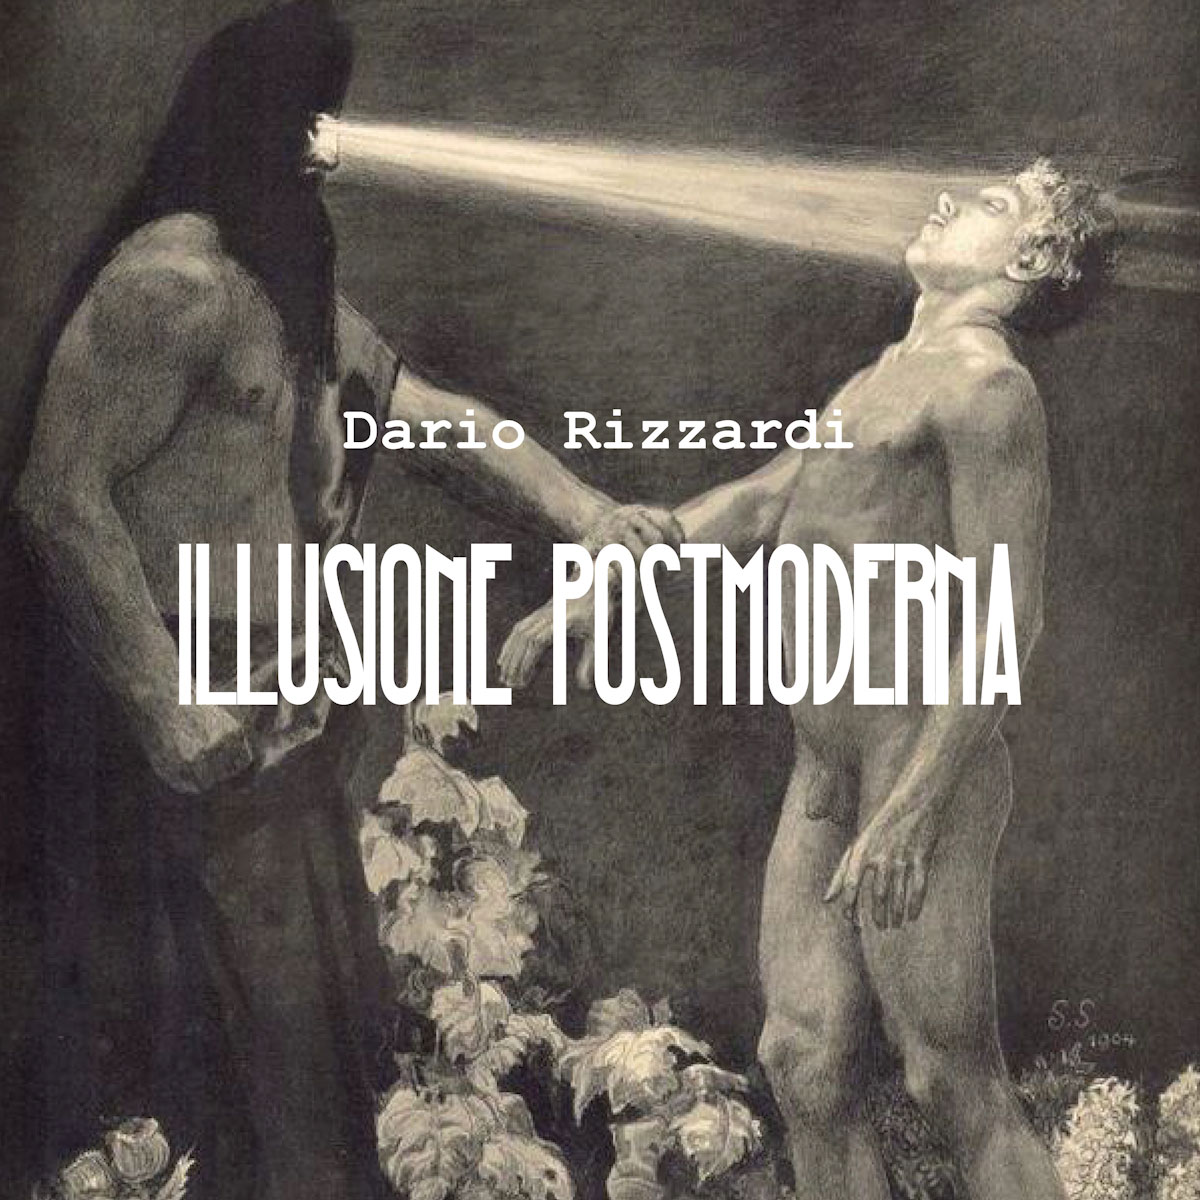 Dario Rizzardi: “Illusione Postmoderna” il nuovo singolo